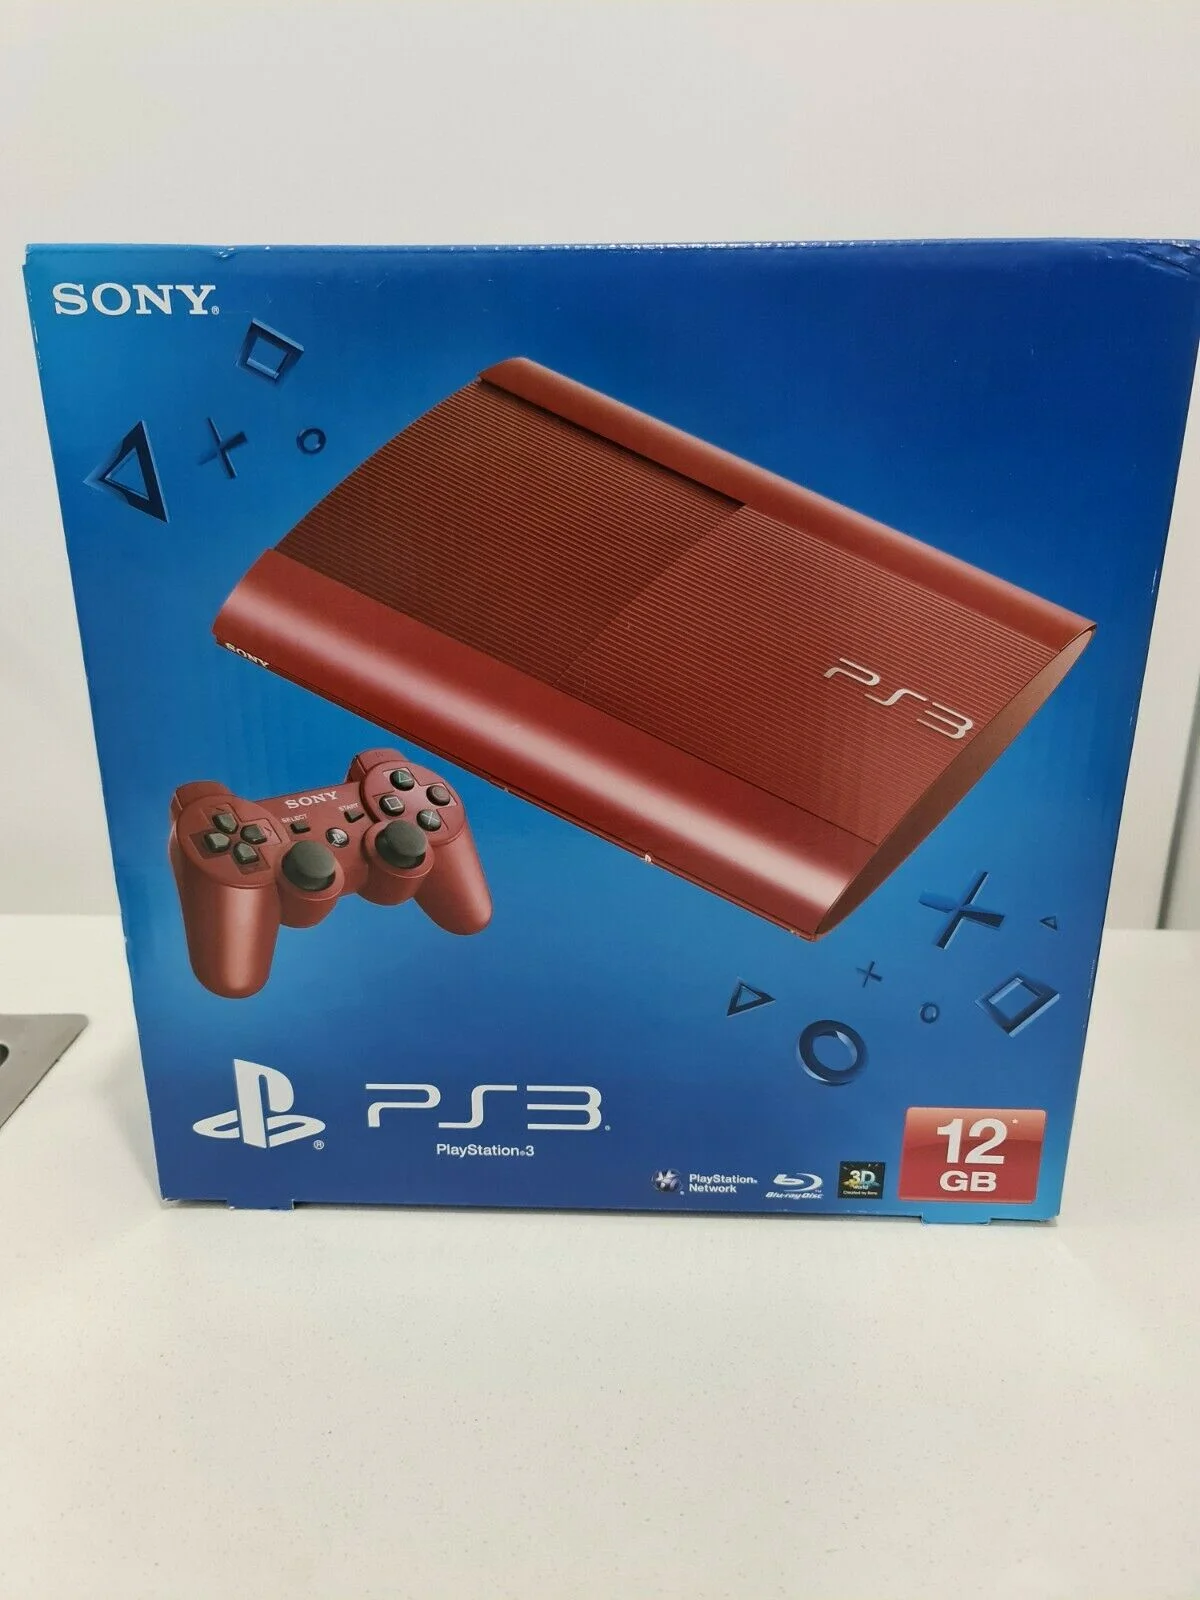  Sony PlayStation 3 Super Slim Garnet Red Console